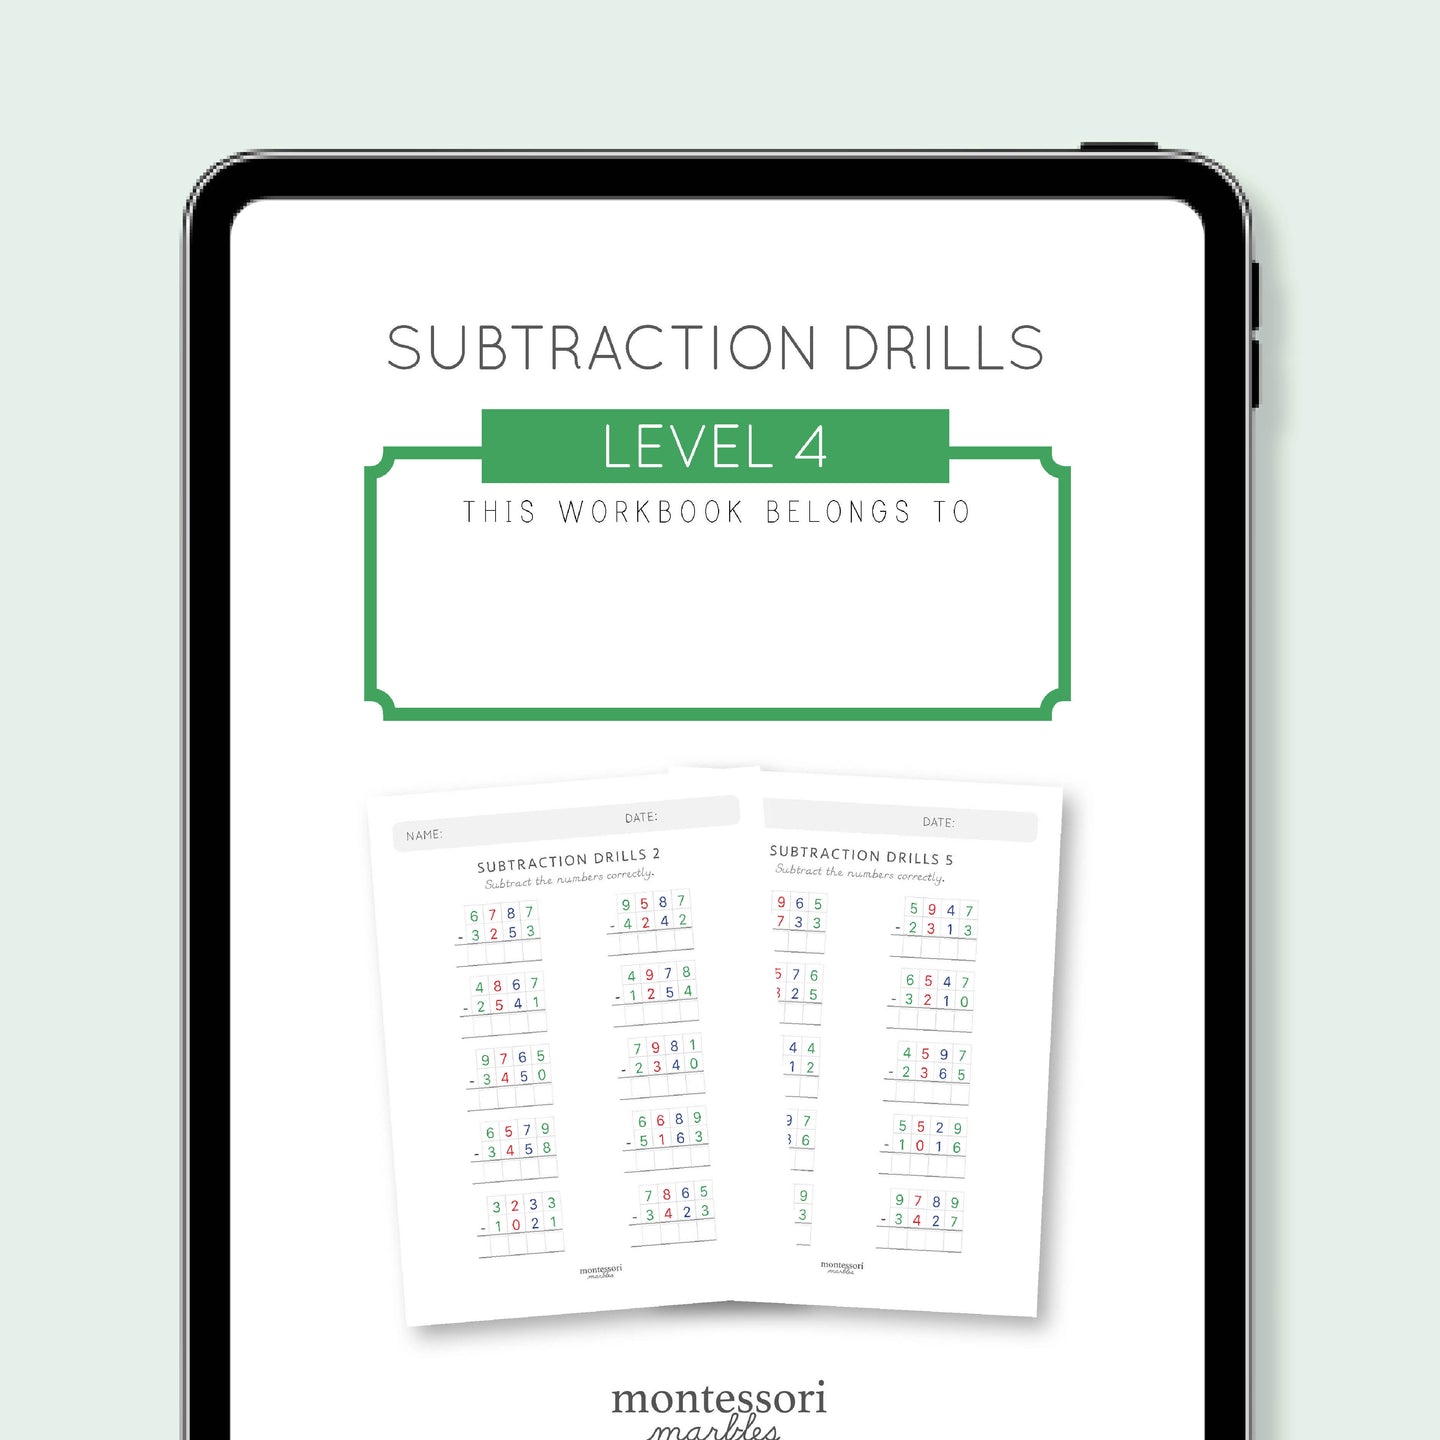 Subtraction Drills Workbook Level 4